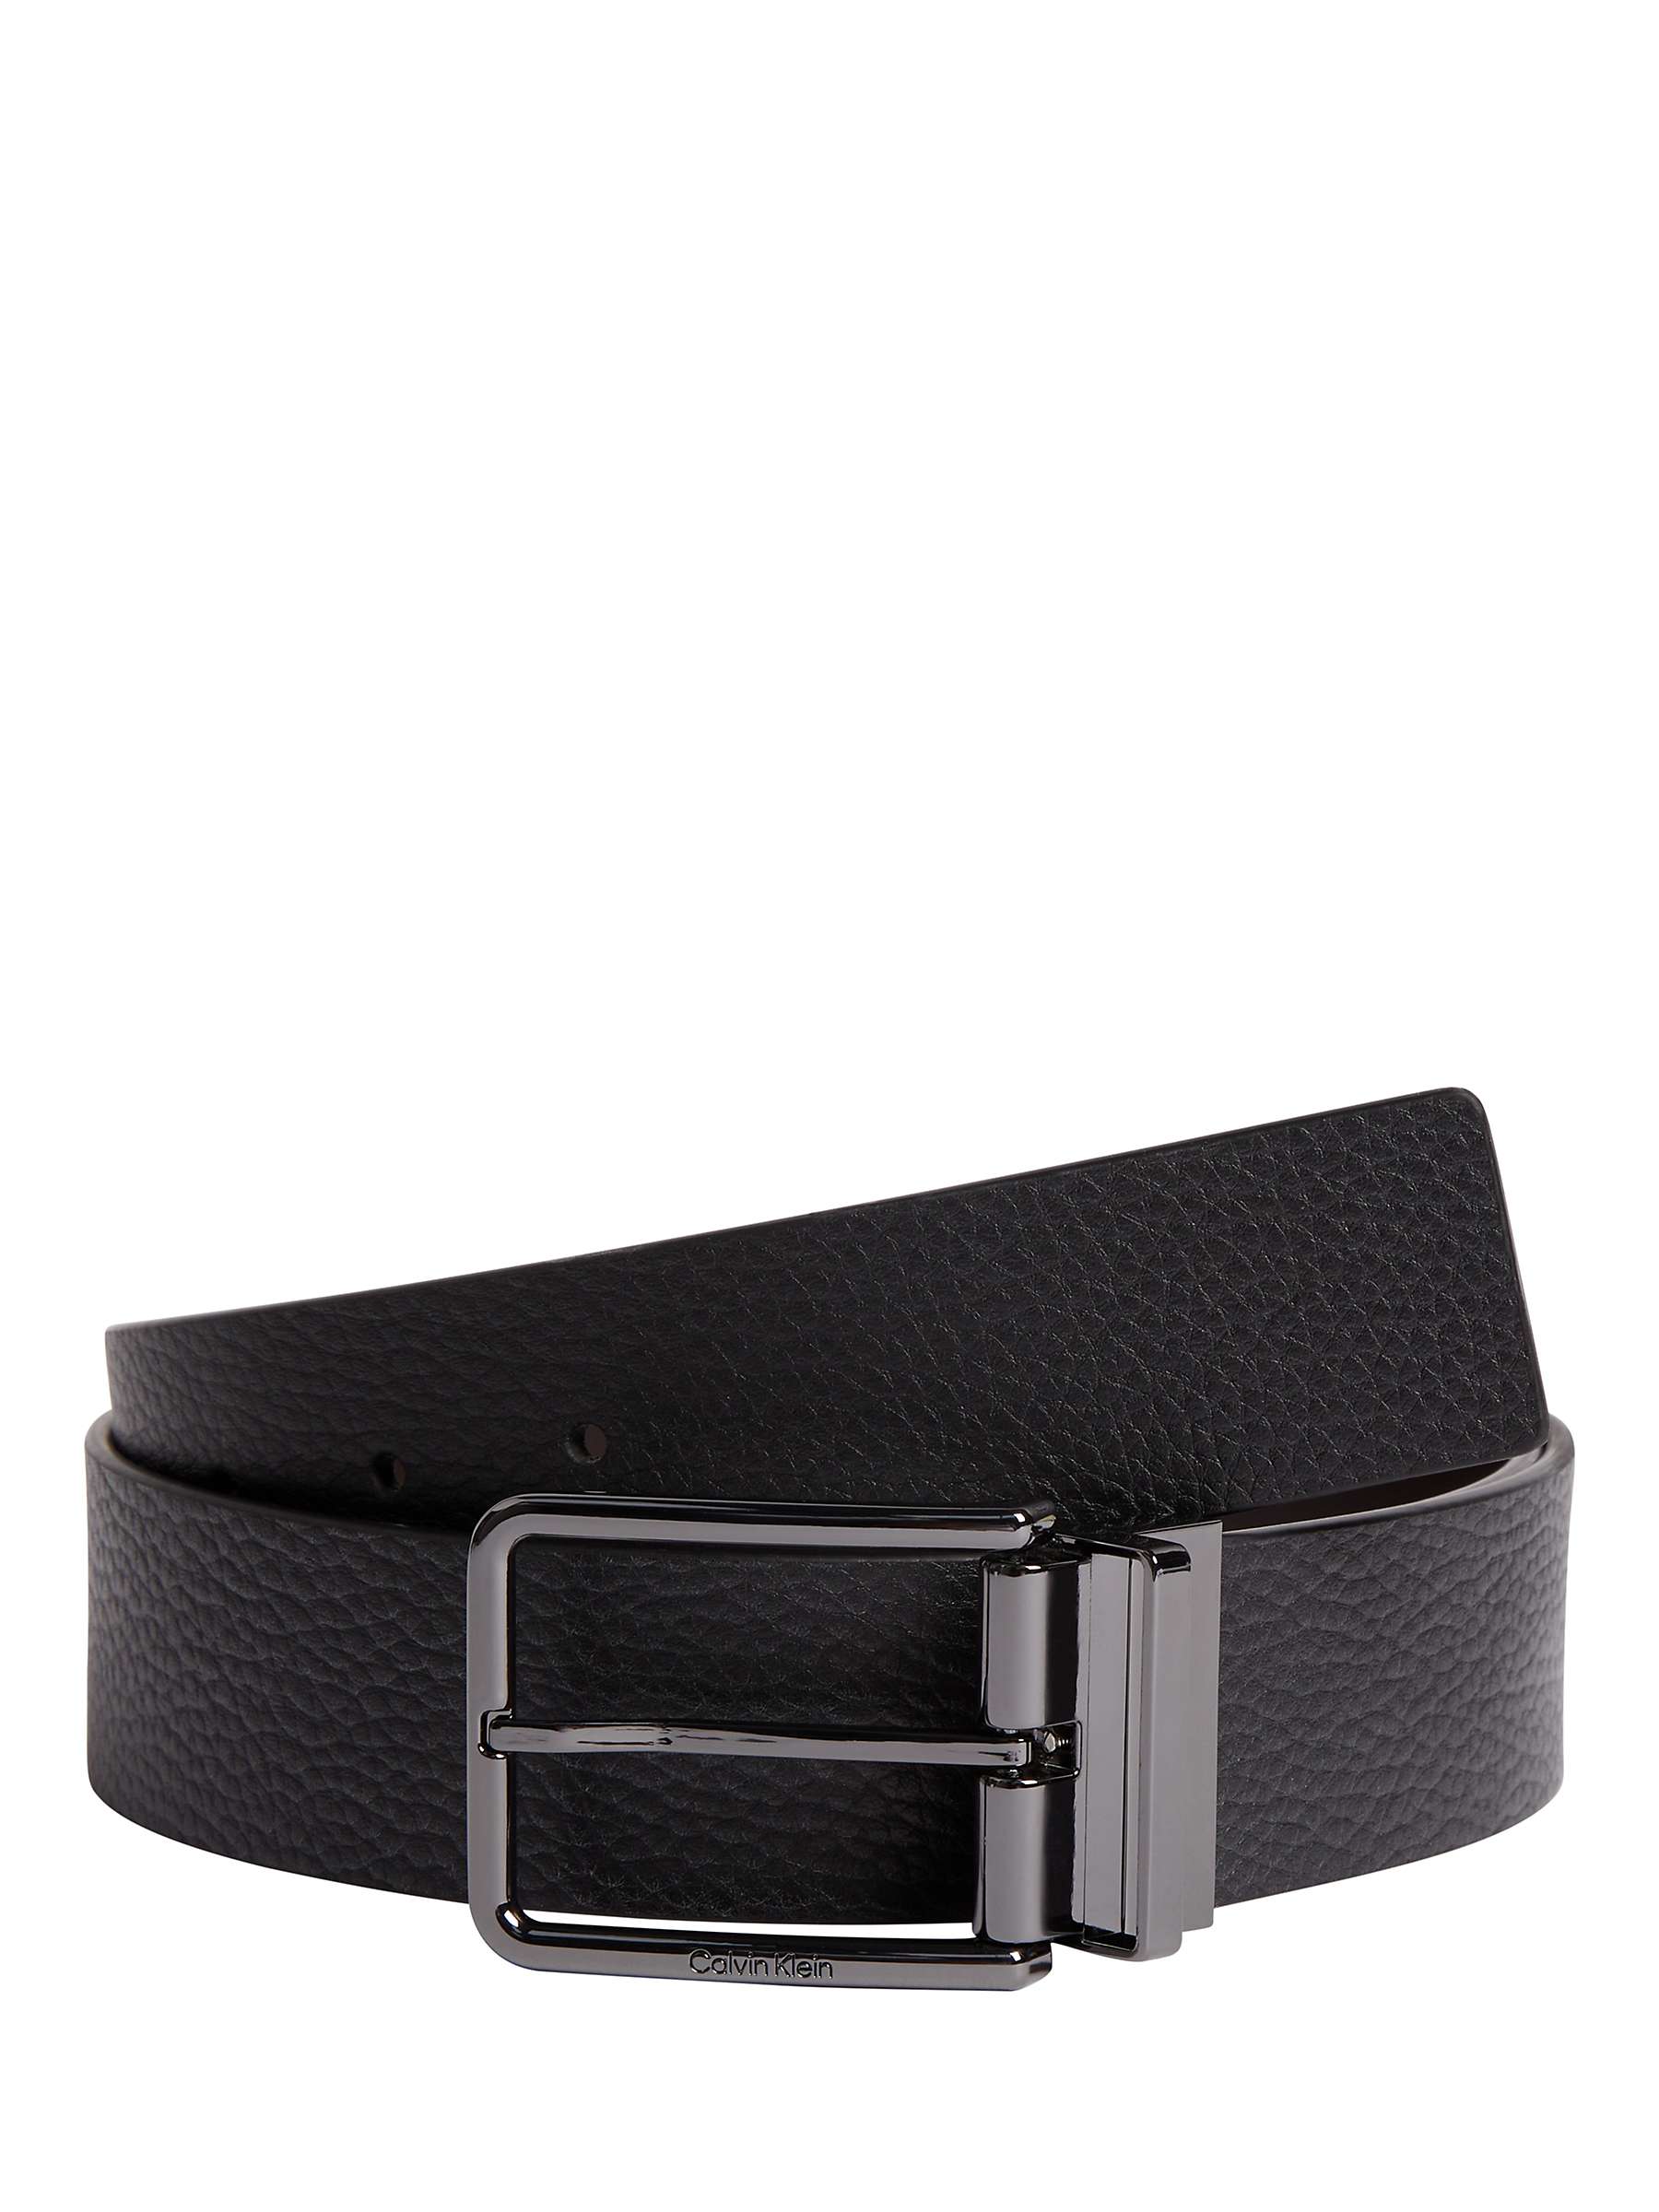 Buy Calvin Klein 40MM Leather Belt, Black Online at johnlewis.com